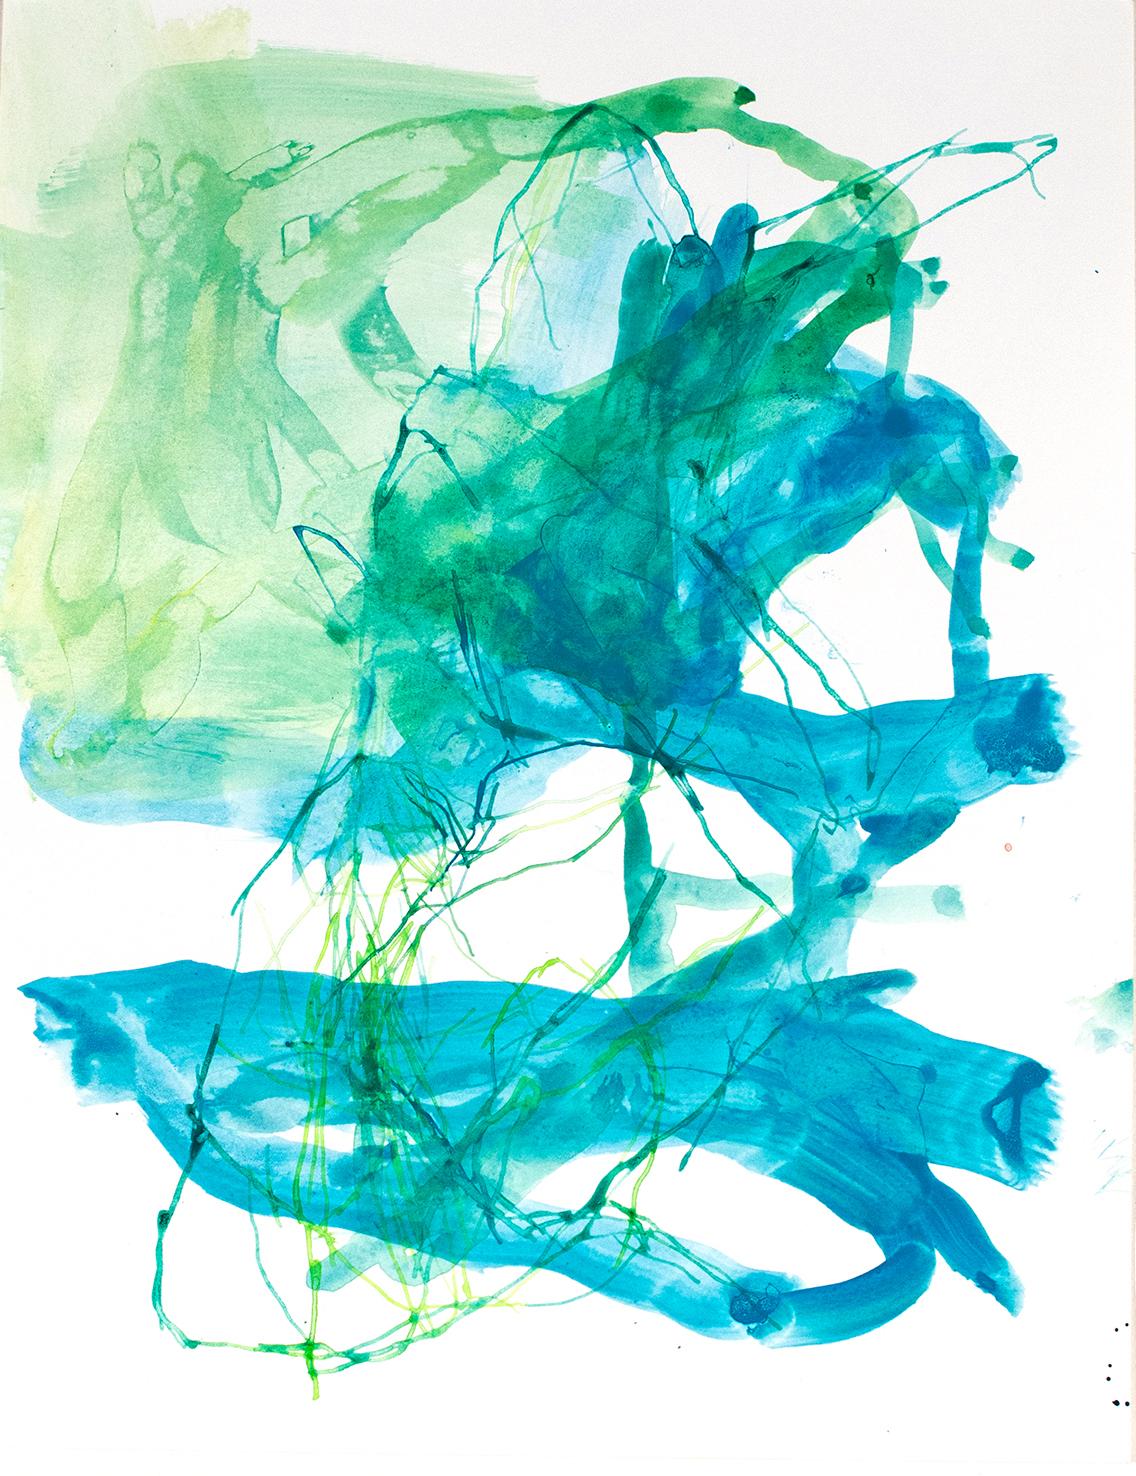 Abstract Print Elizabeth Gilfilen - Laawac n°79 - Édition colorée à l'encre sur papier avec impression pigmentaire d'art